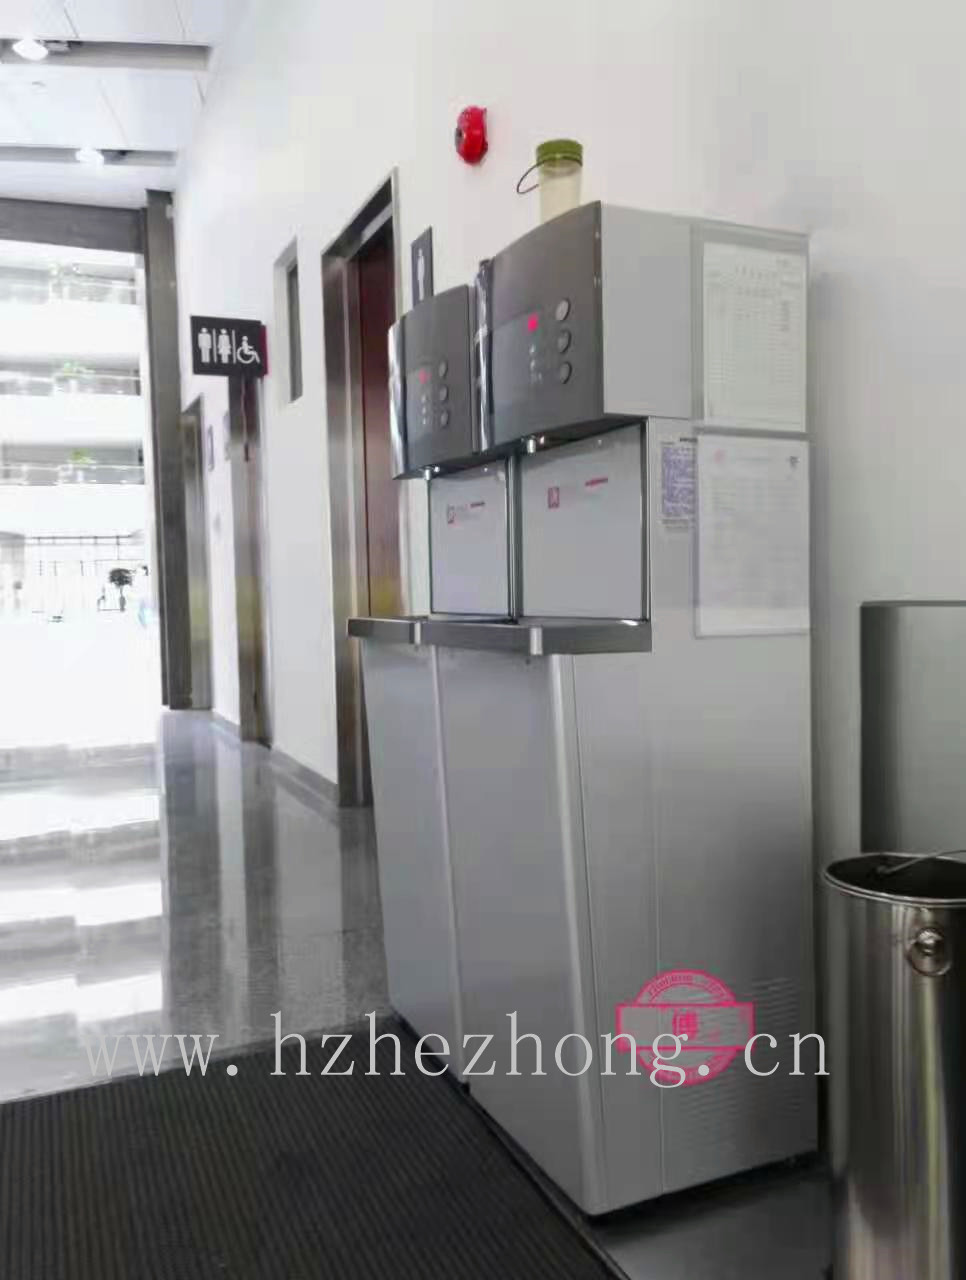 北京大学汇丰商学院使用贺众牌饮水机